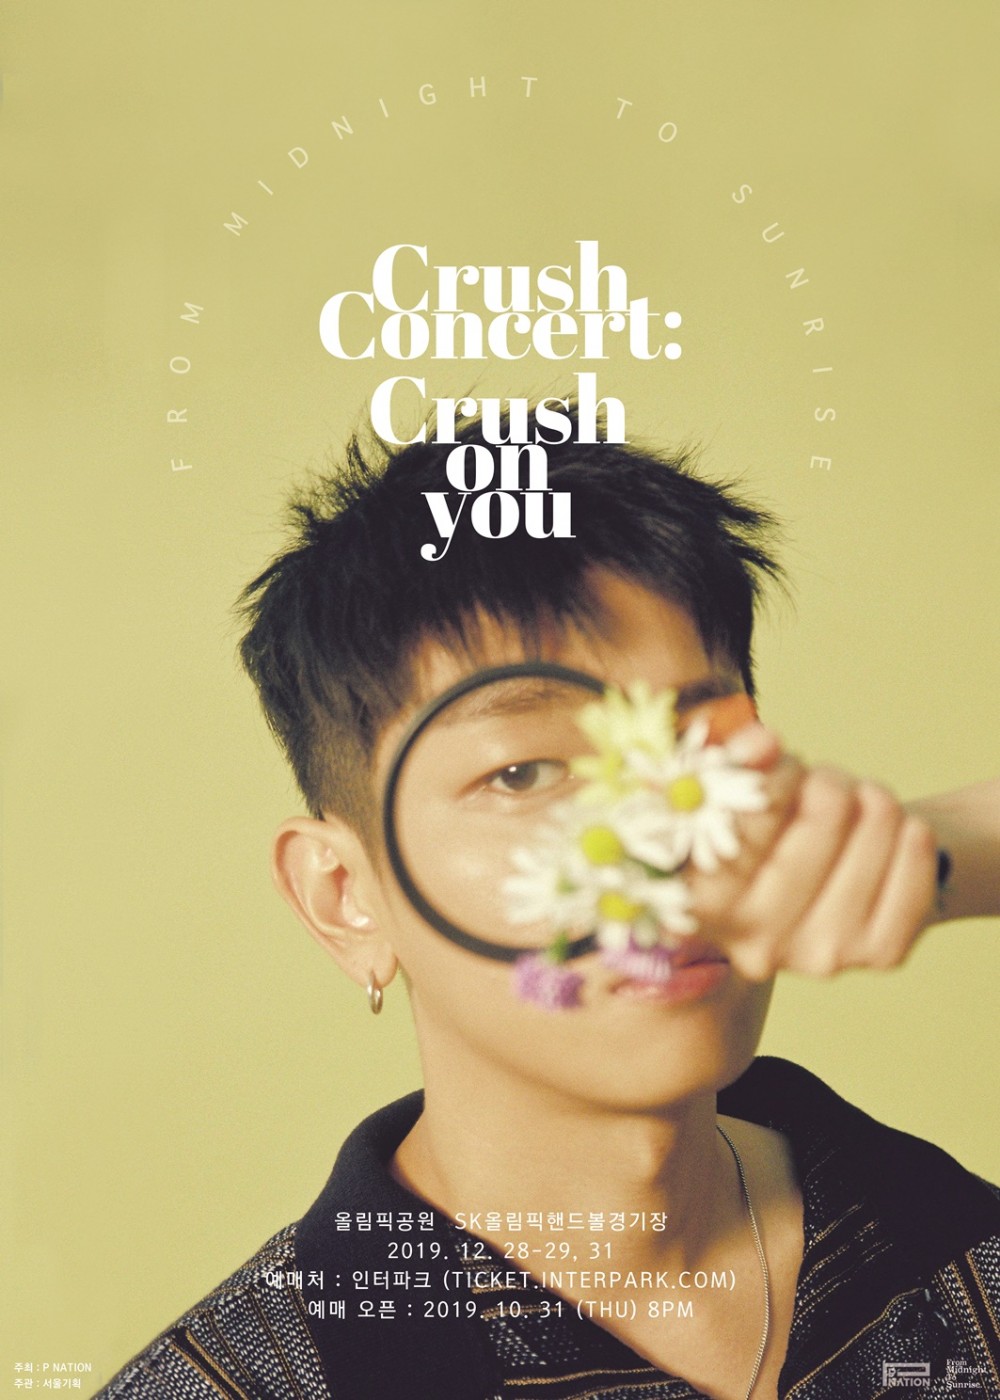 Crush объявил о предстоящем предновогоднем сольном концерте